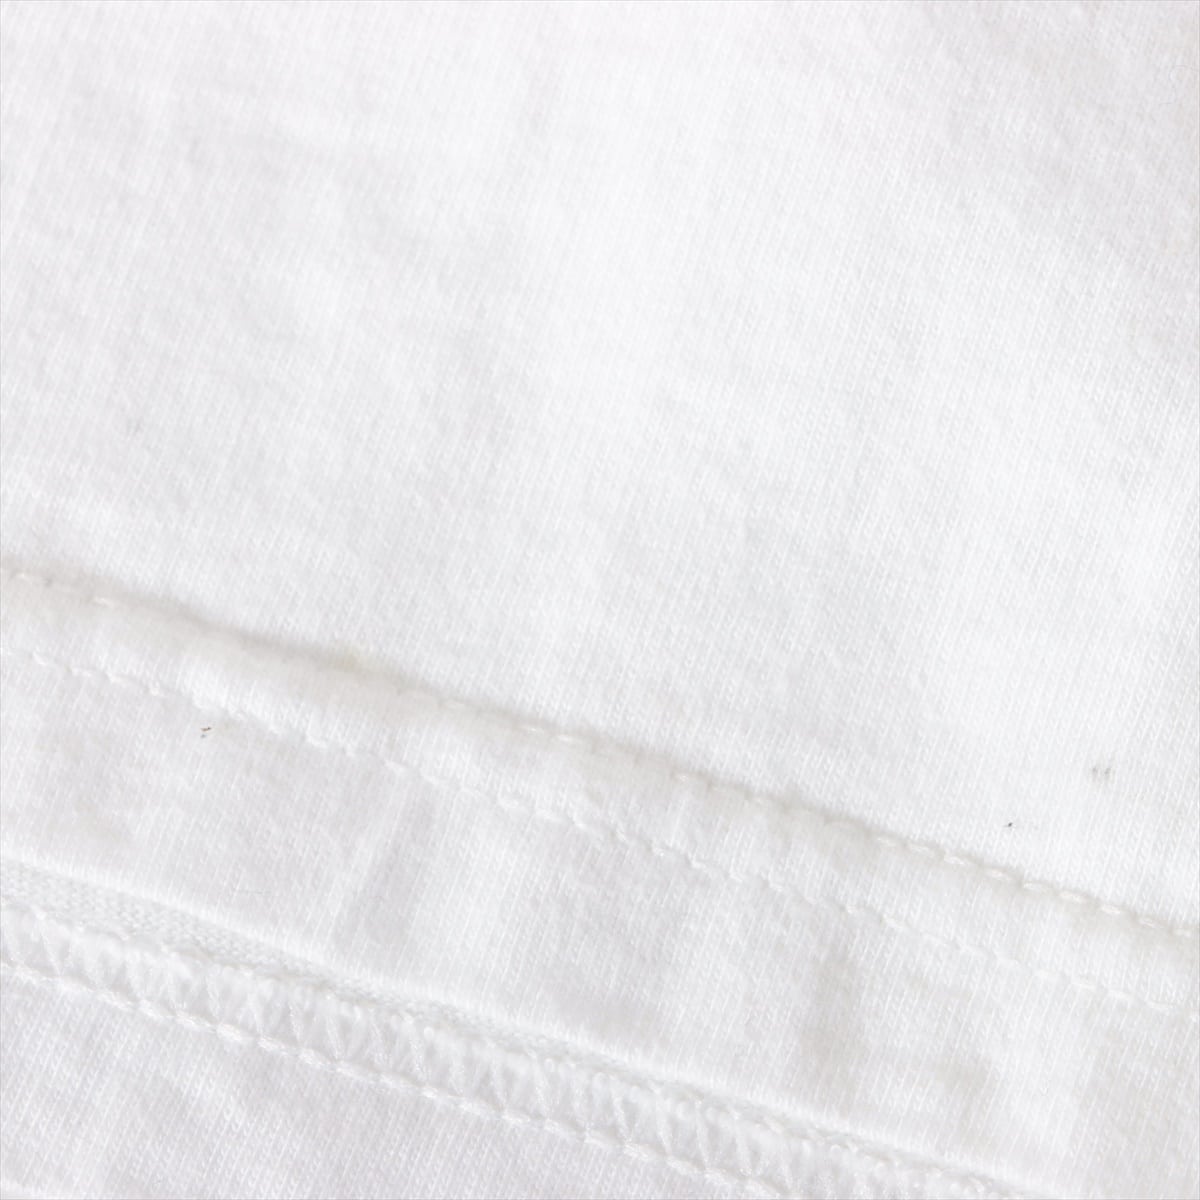 シュプリーム 20SS コットン Tシャツ M メンズ ホワイト